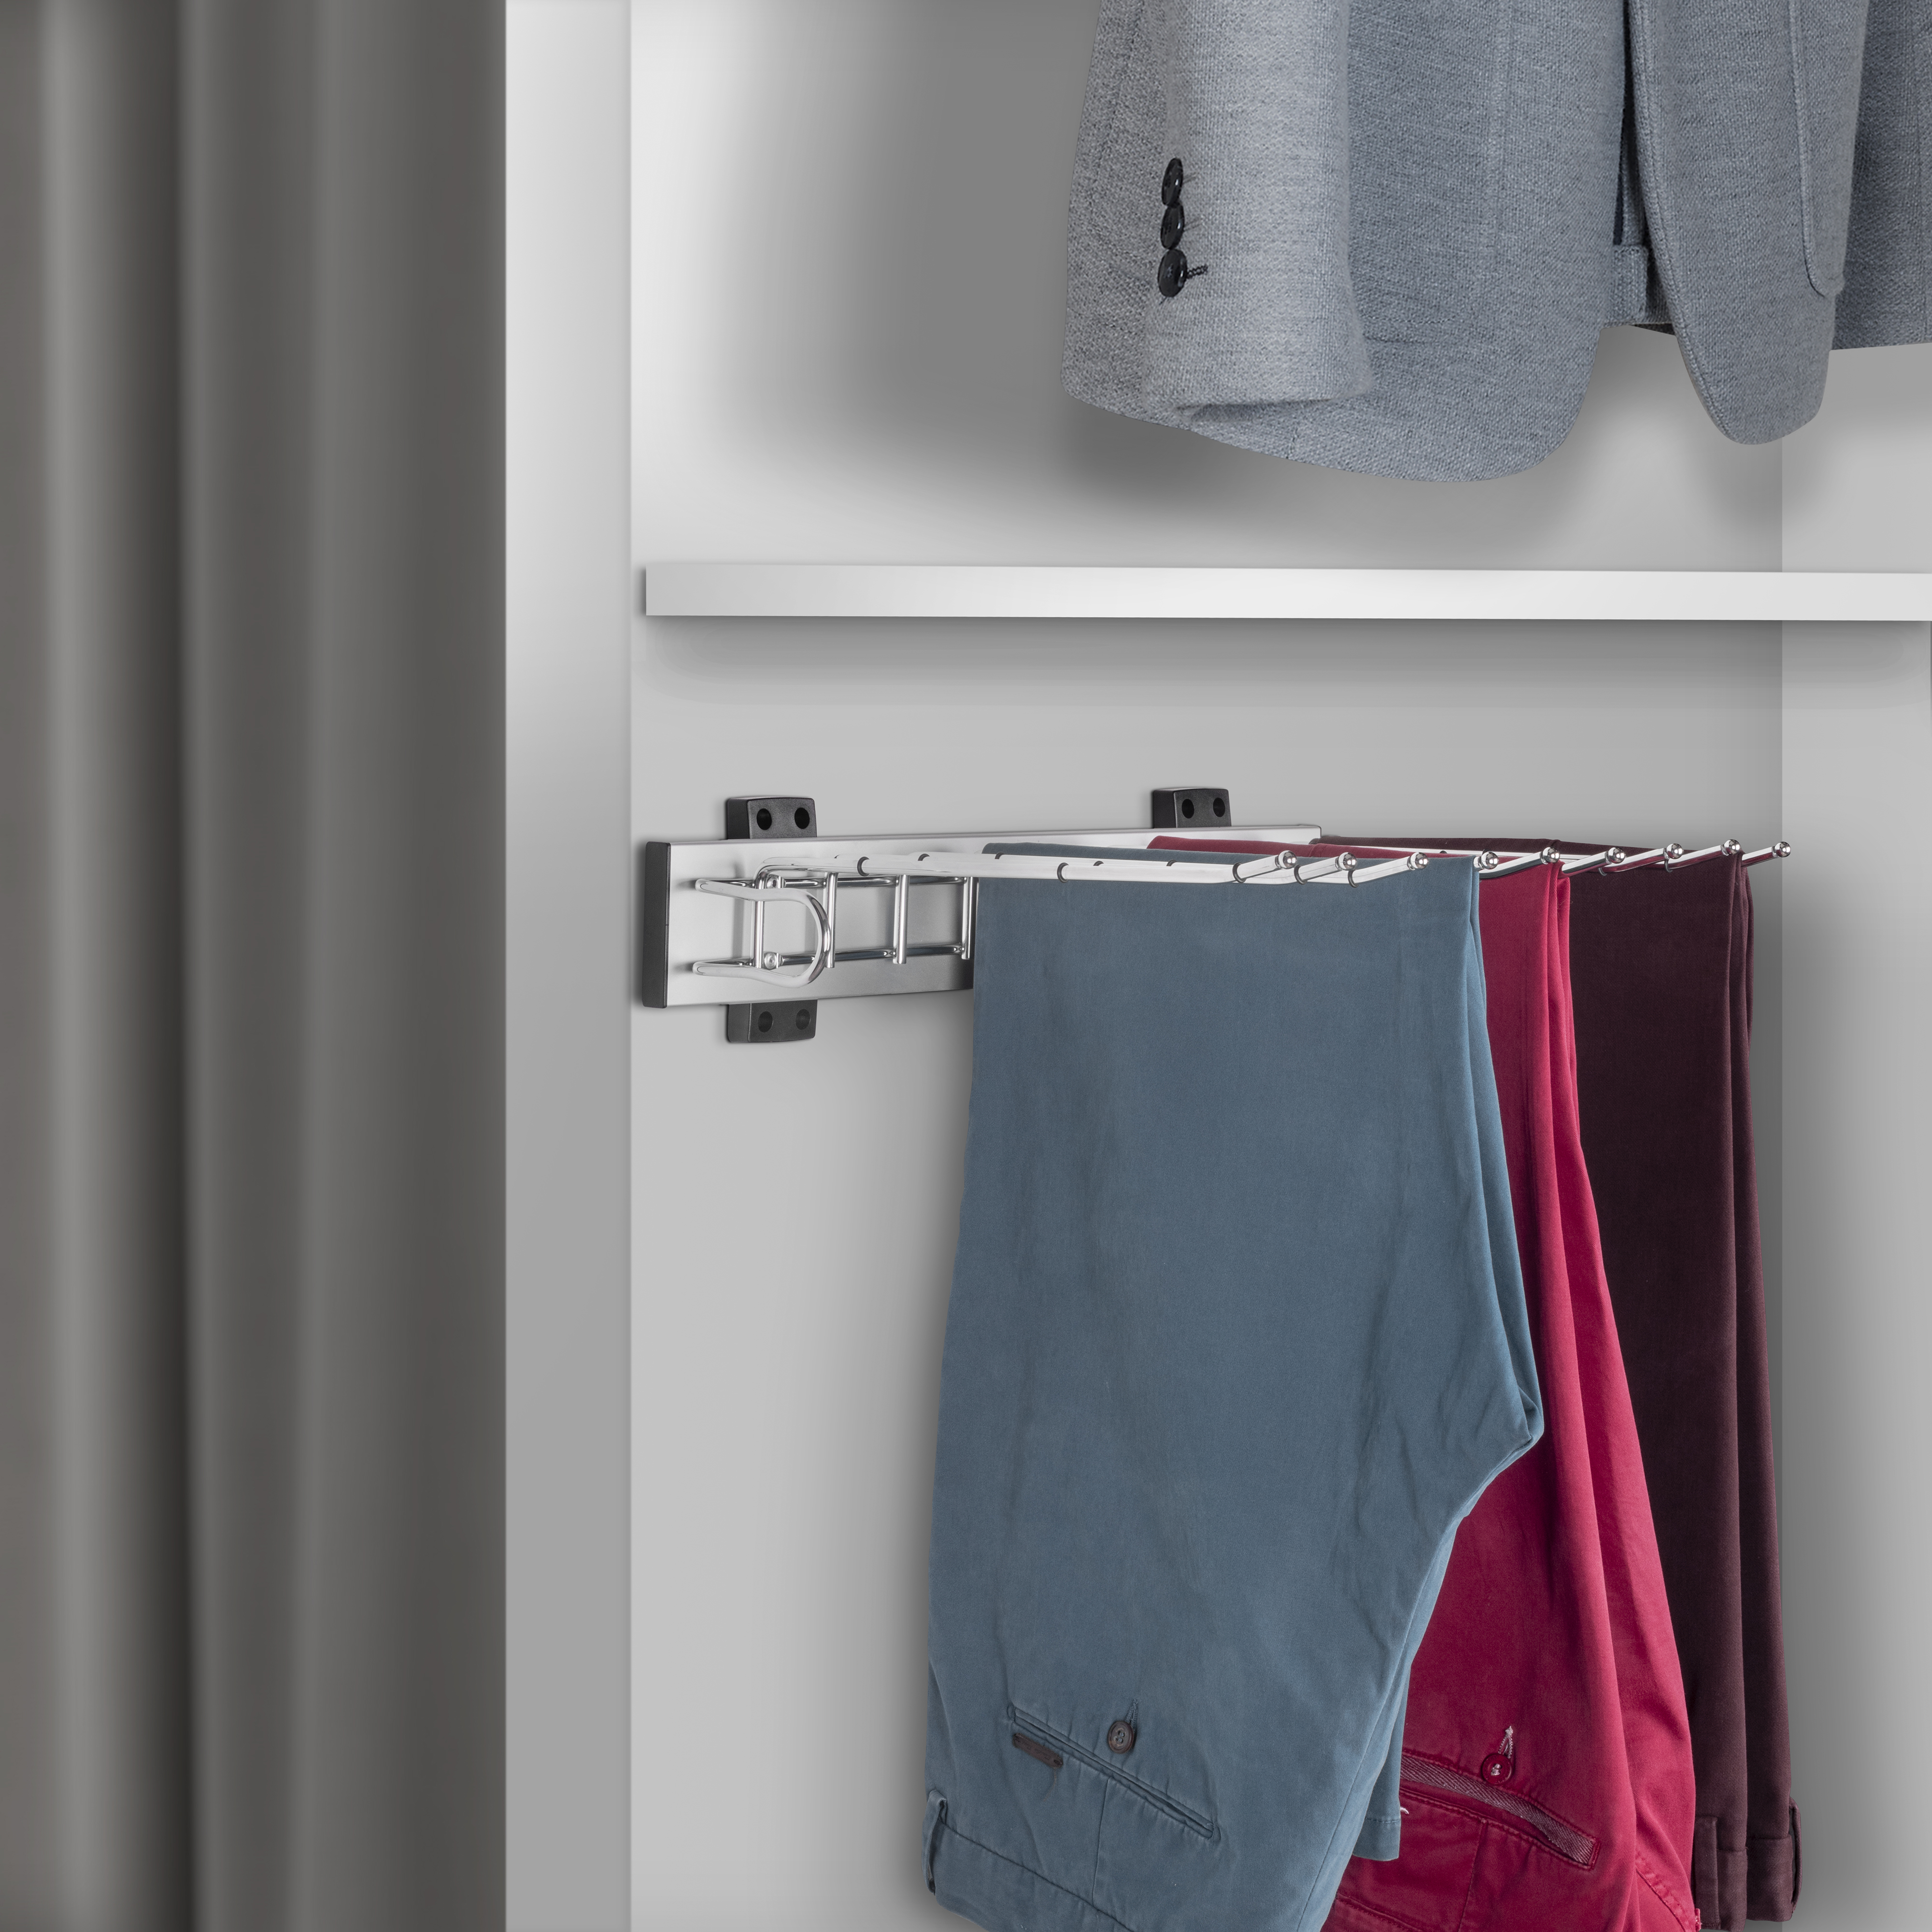  Porte-pantalons Self a montage lateral pour armoire, Gauche, Chrome, Acier et Plastique et Aluminium.